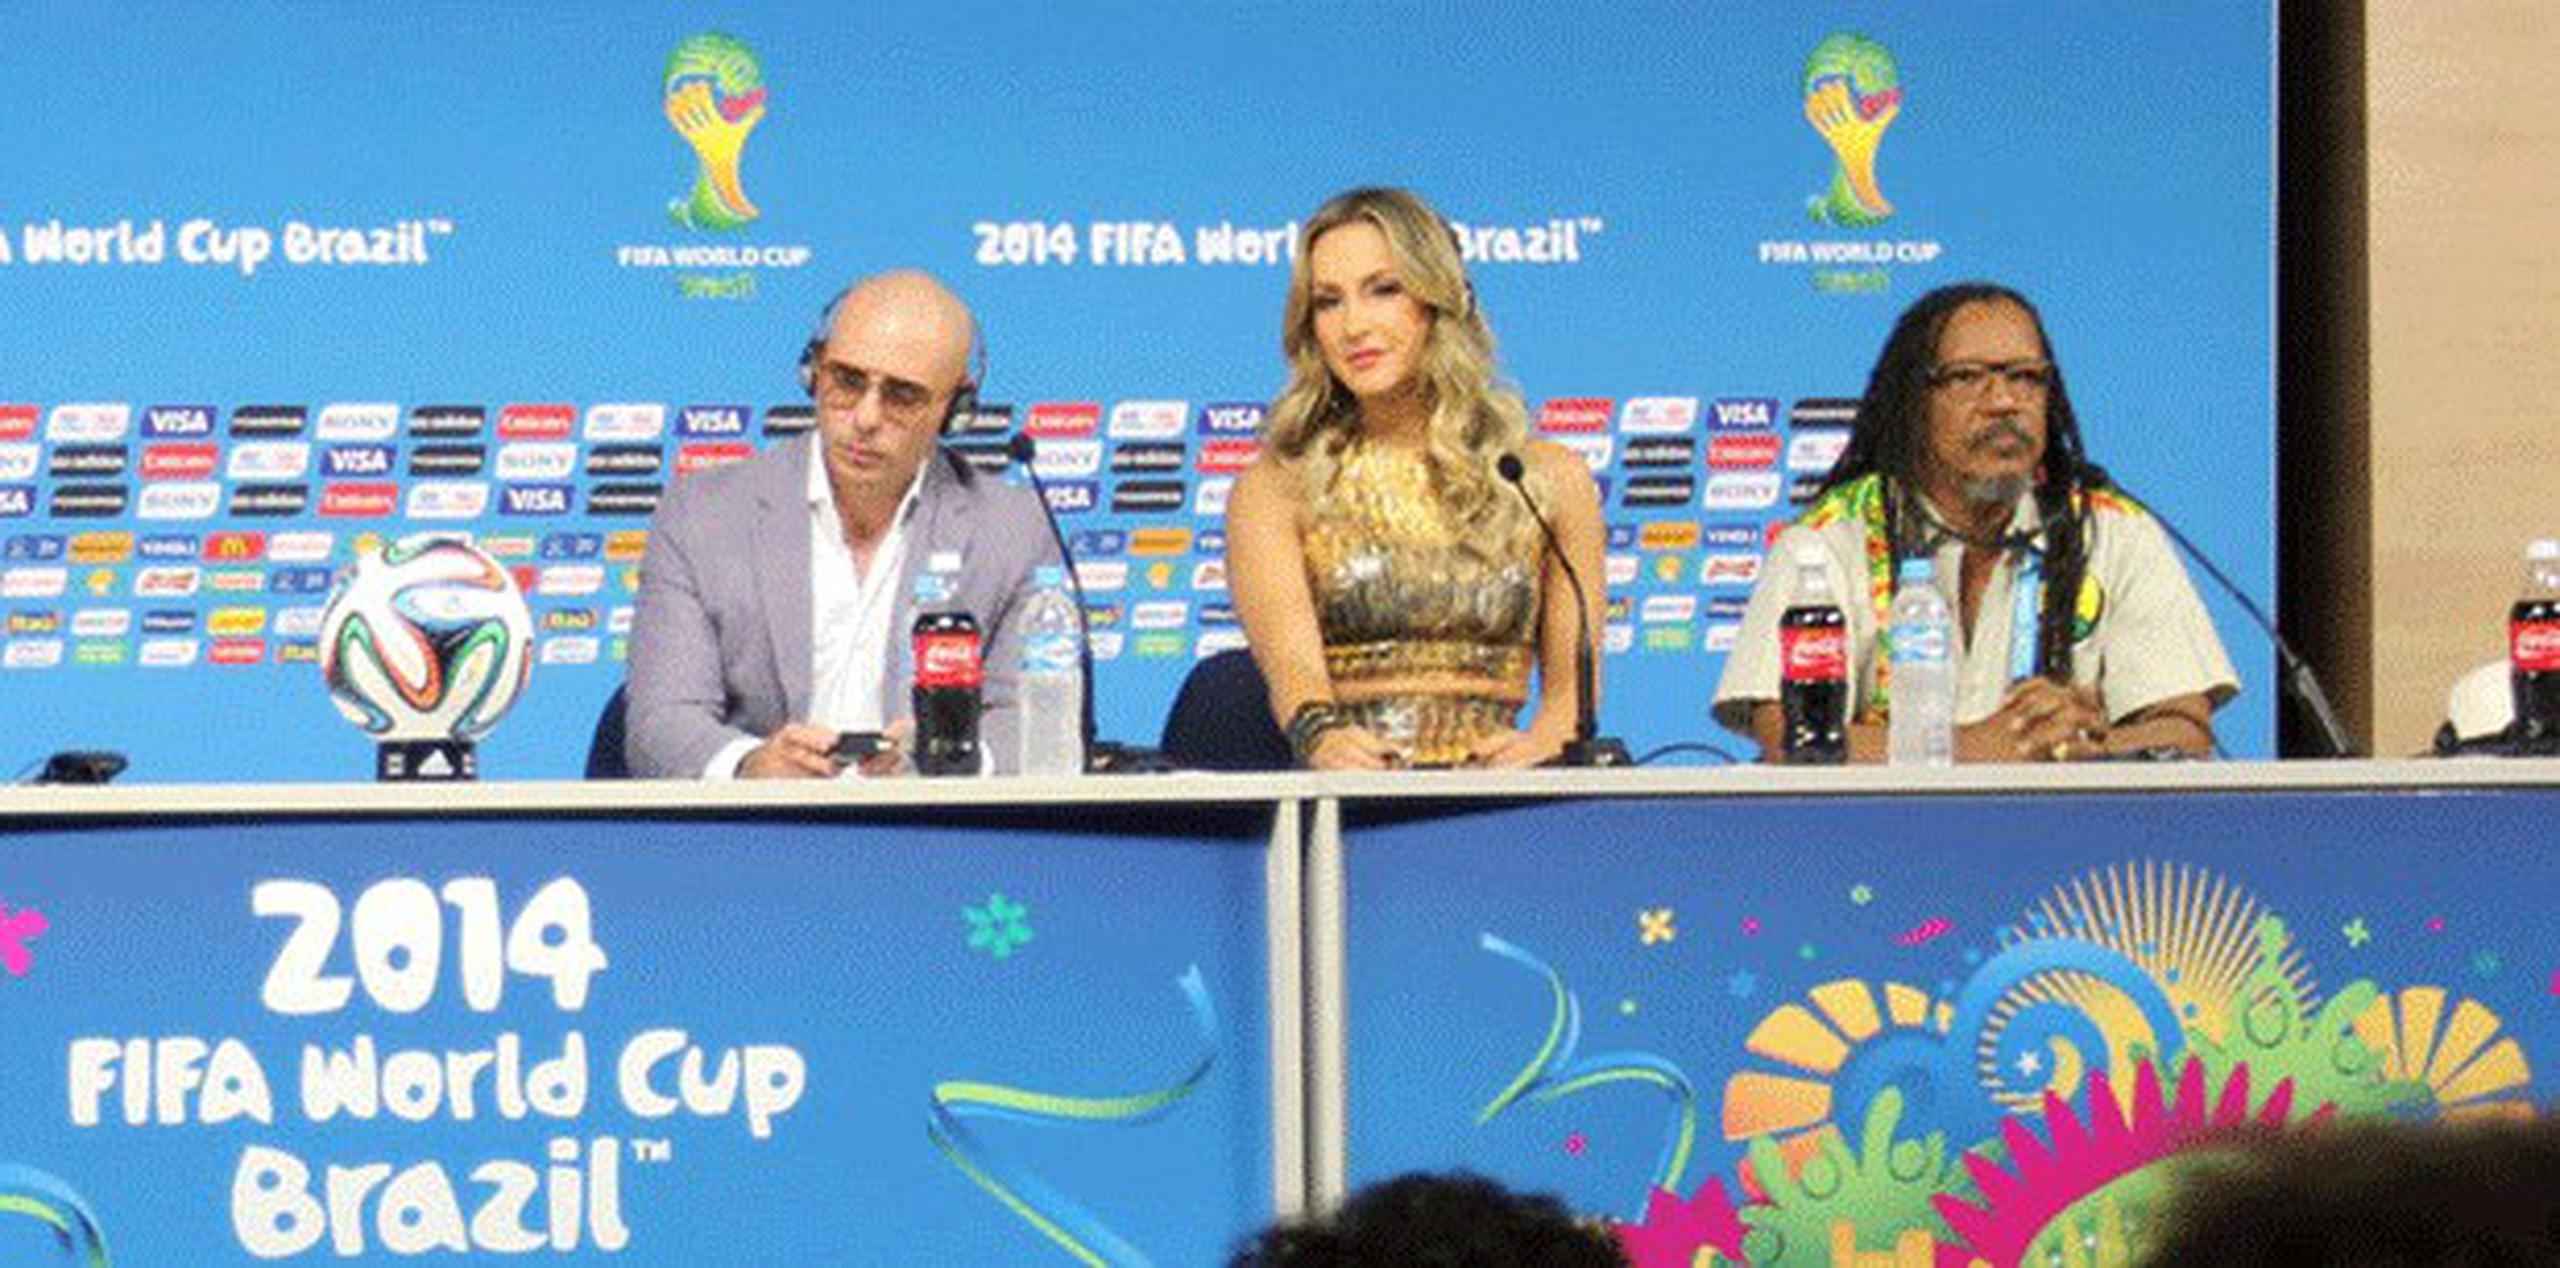 En la conferencia de prensa estuvo Pitbull, Claudia Leitte y João Jorge Santos Rodrigues, para hablar del espectáculo. (alex.figueroa@gfrmedia.com)